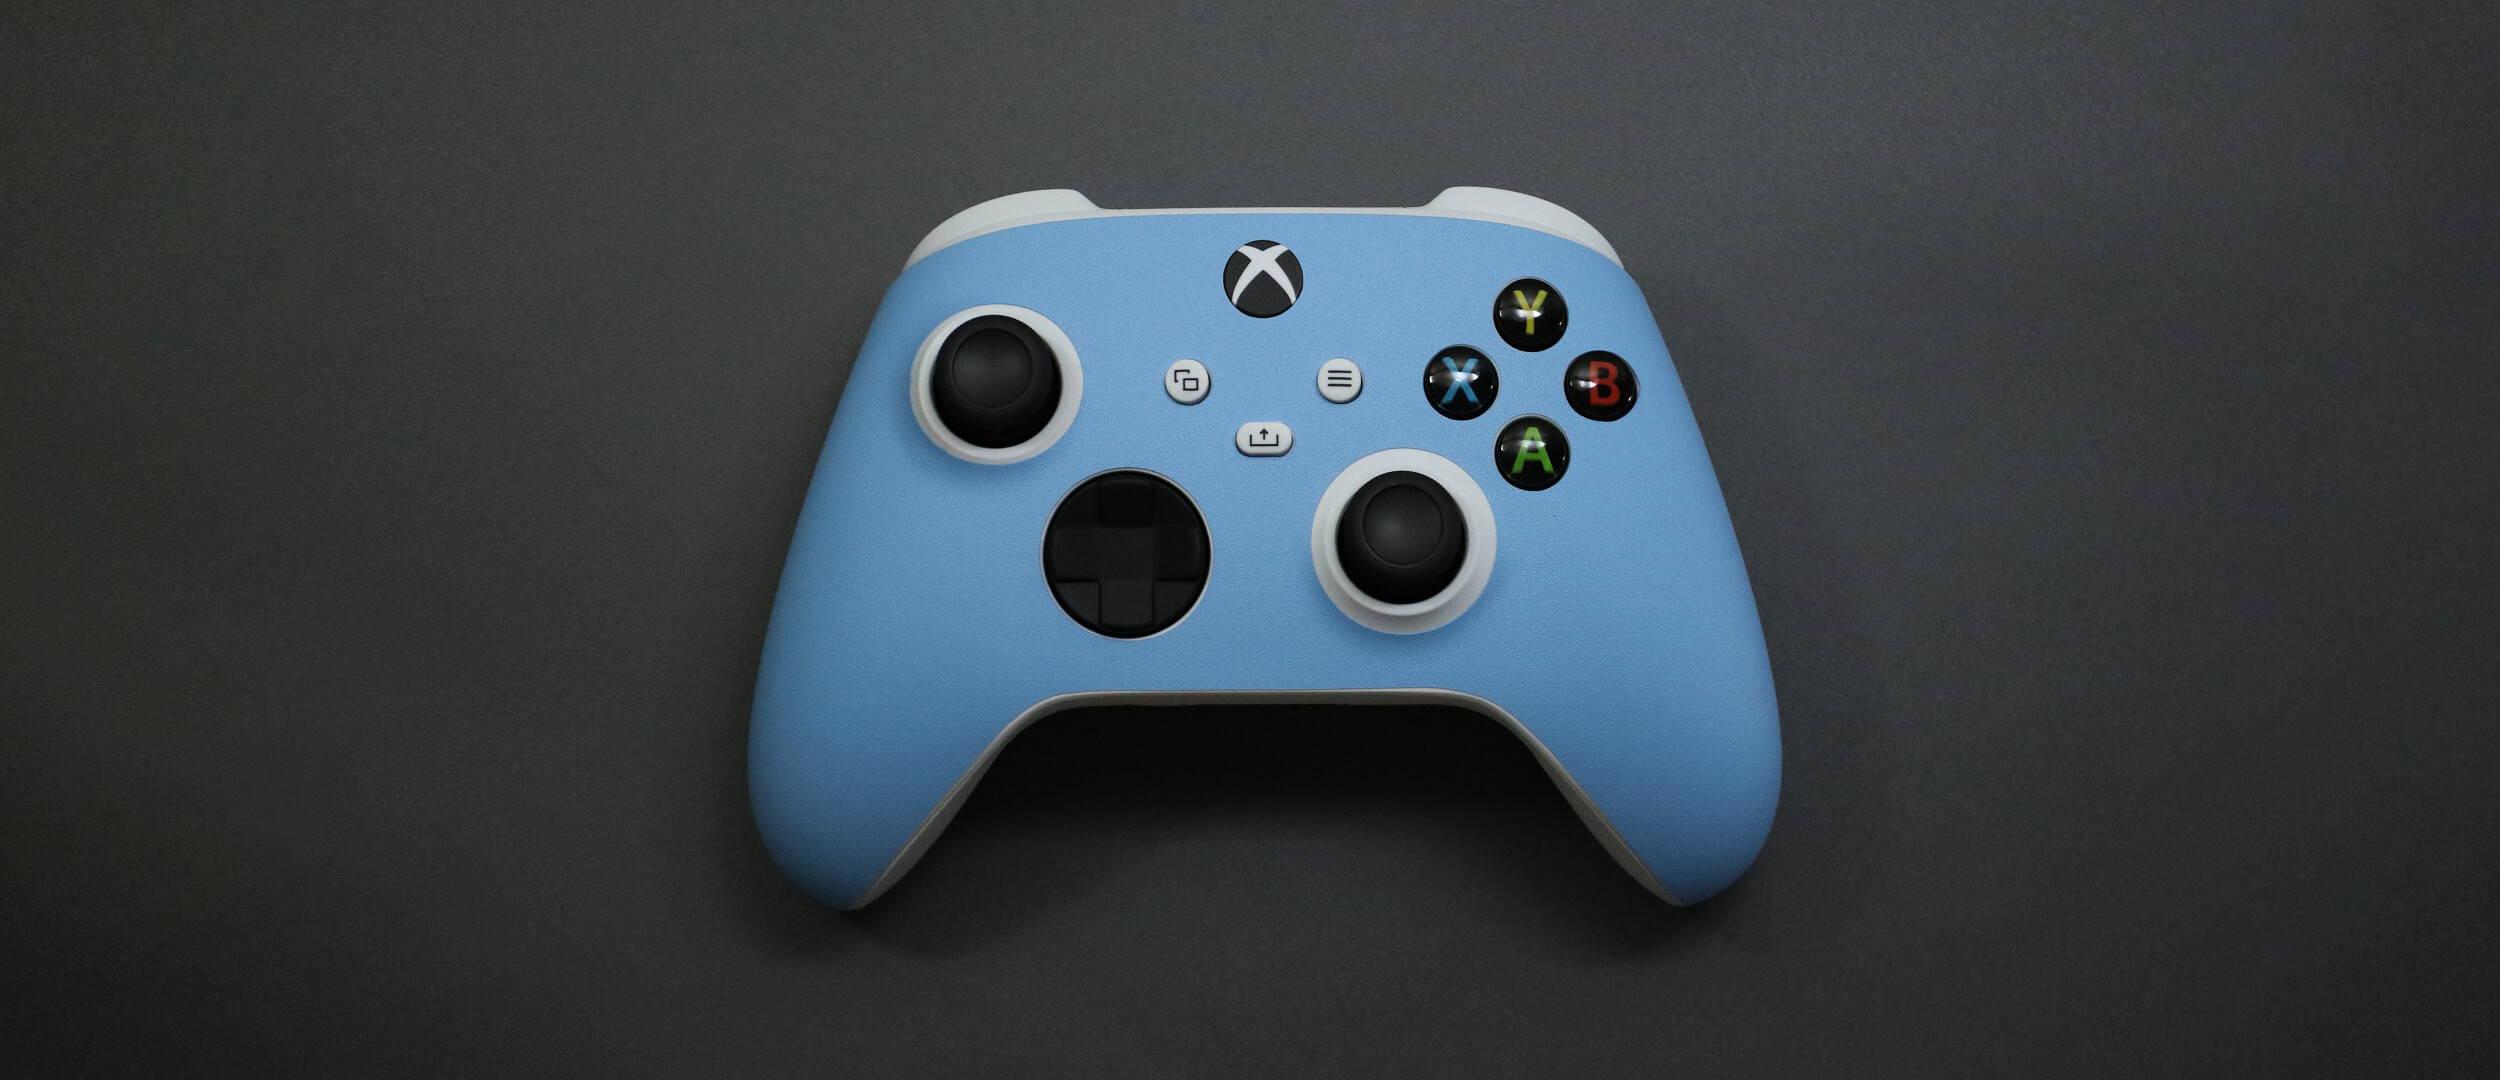 Xbox Series S Controller Textured matt light blue skins